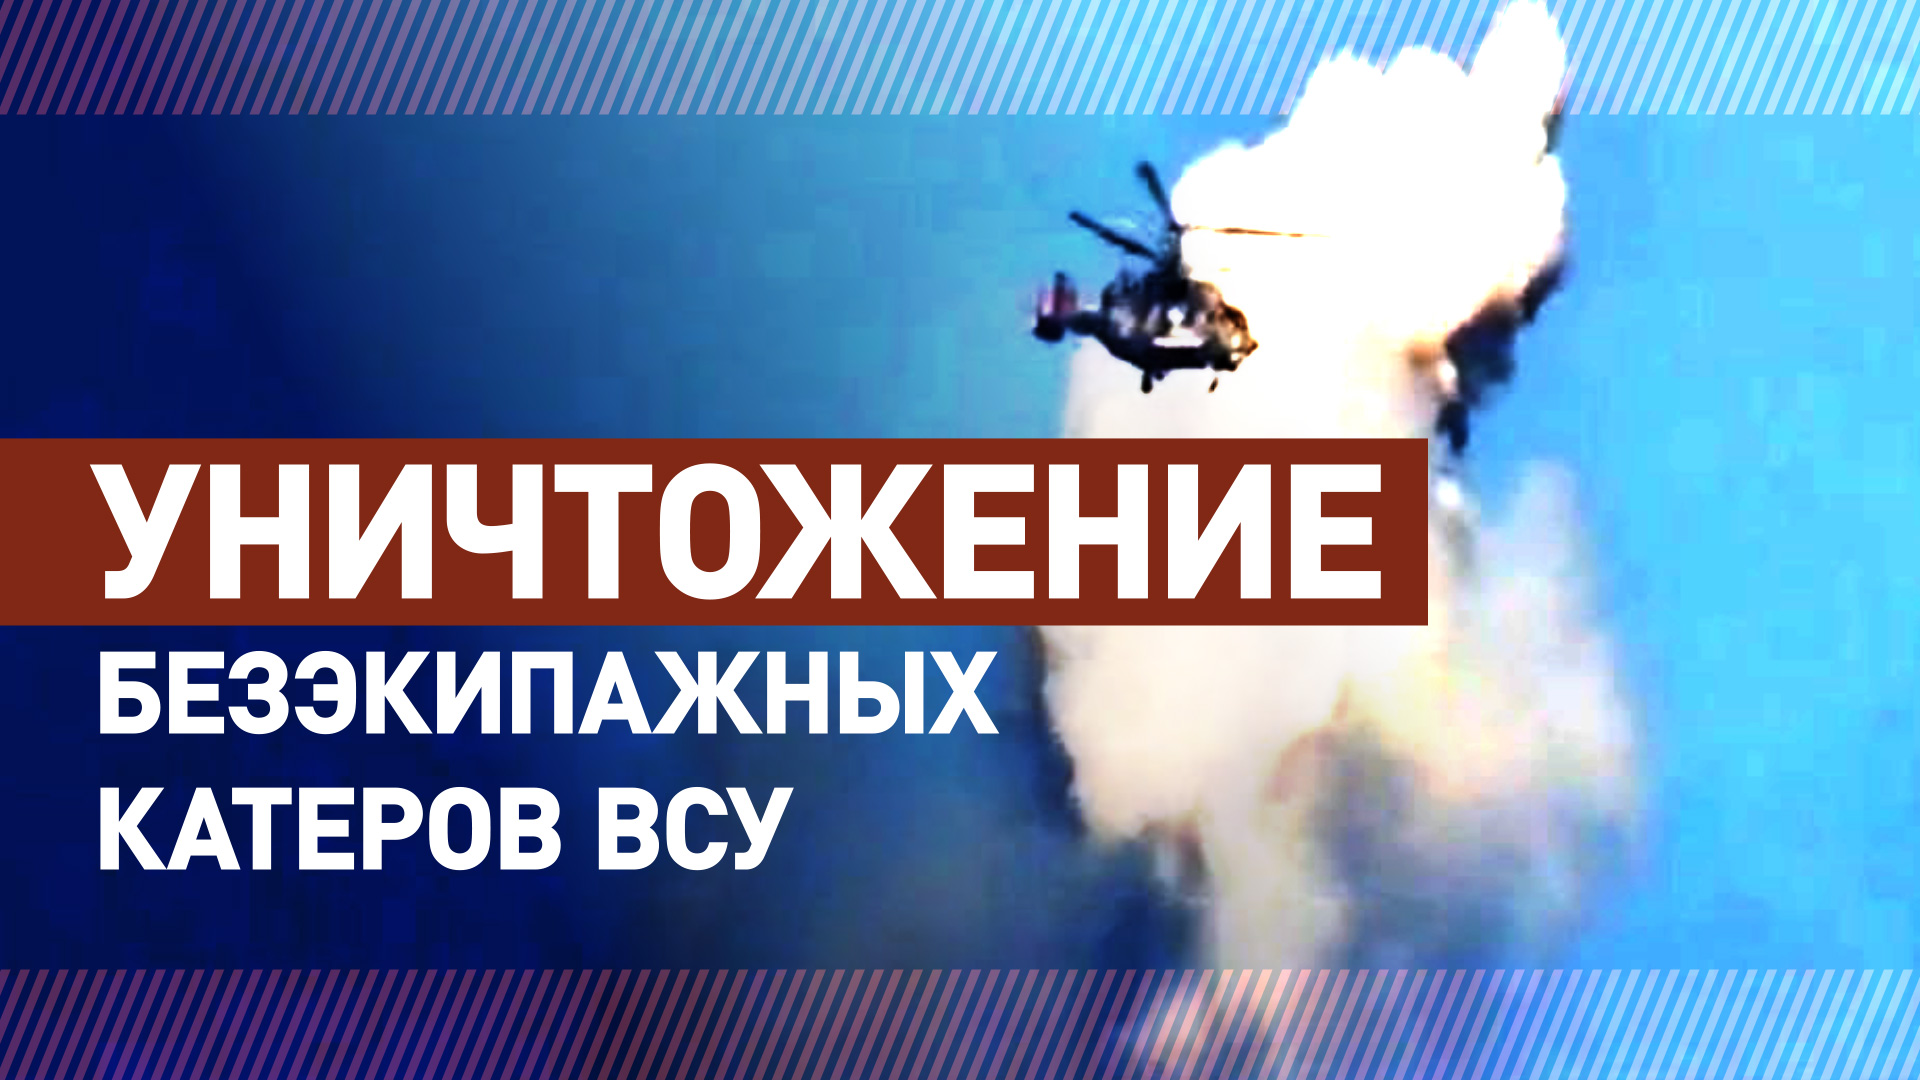 Силы Черноморского флота уничтожили пять безэкипажных катеров ВСУ у побережья Крыма